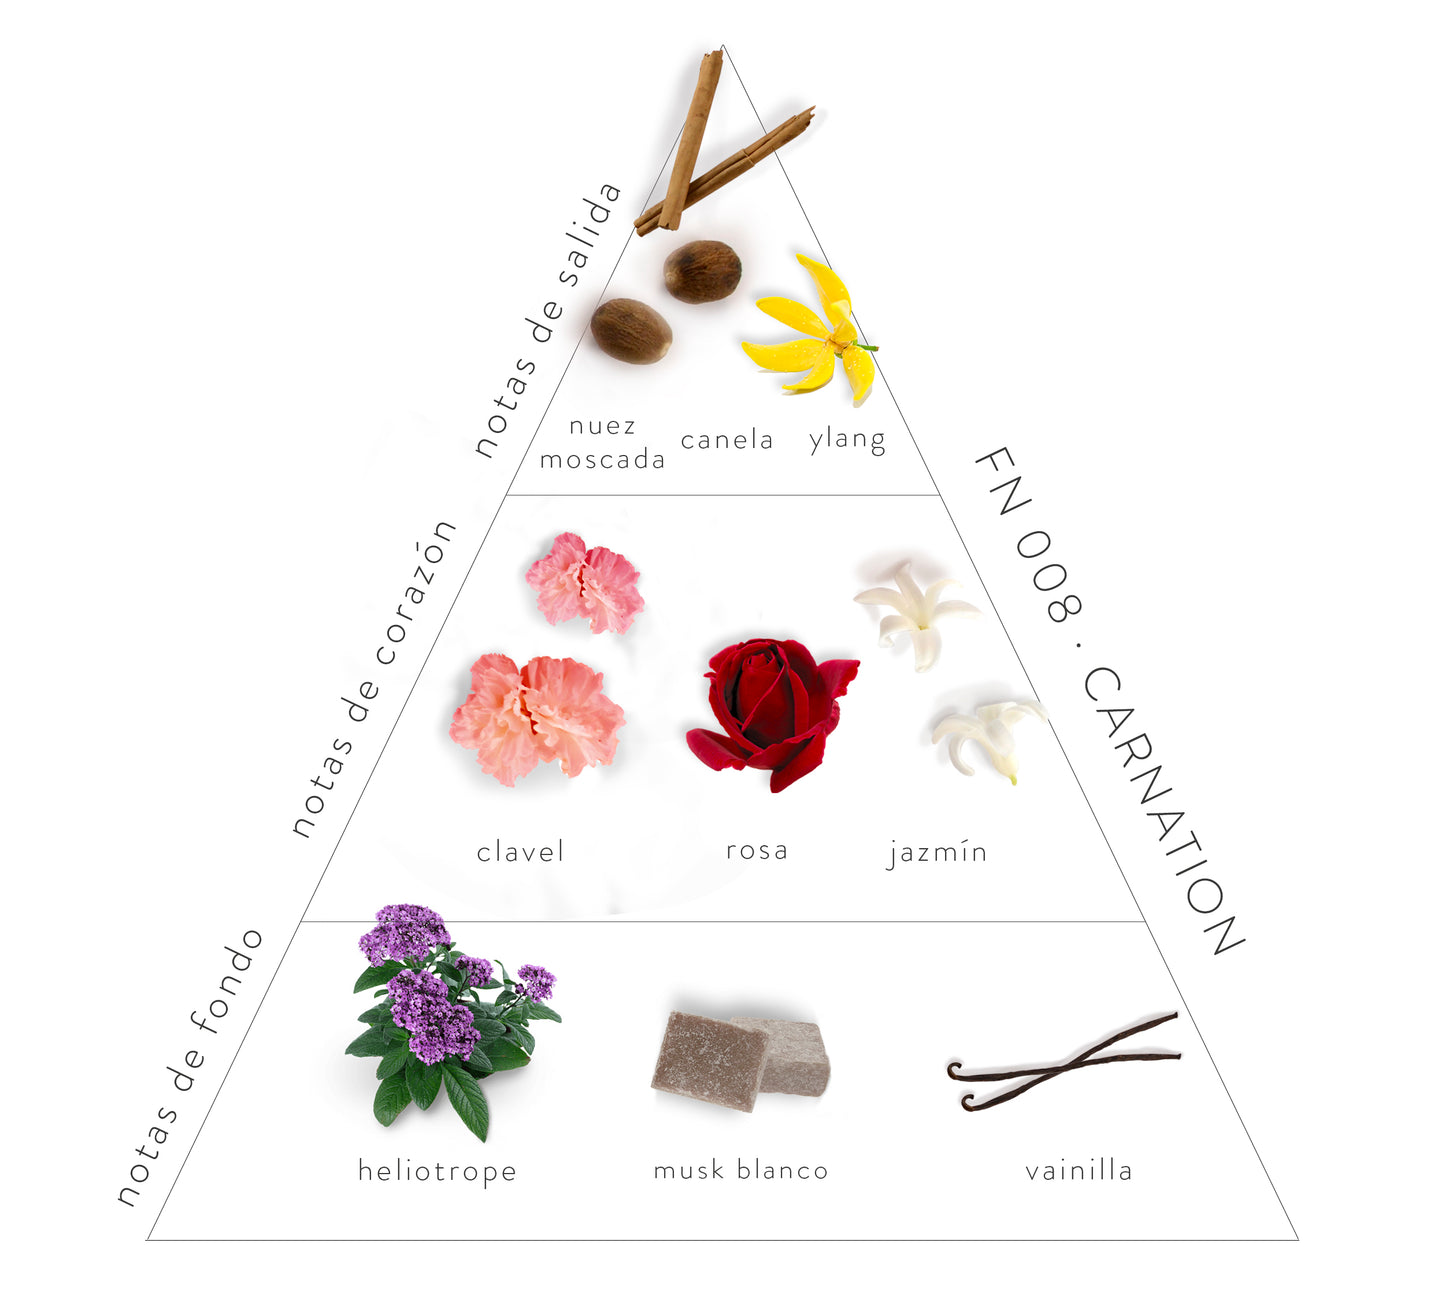 Pirámide Olfativa Carnation: Notas de salida: Nuez moscada, canela  y ylang, Notas de corazón: clavel, rosa y jazmín. Notas de fondo: heliotrope, musk blanco y vainilla.